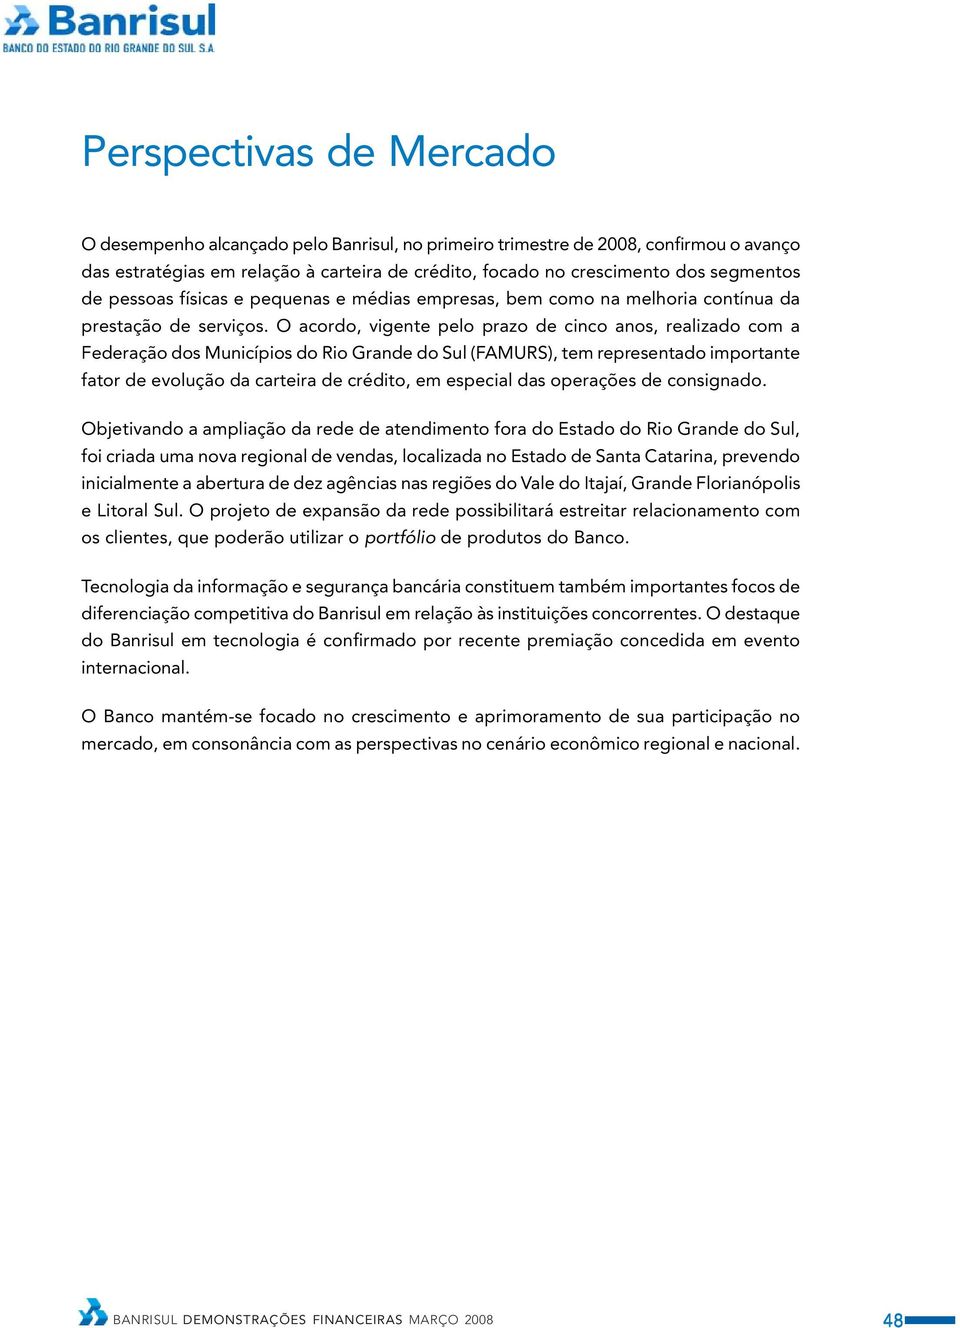 O acordo, vigente pelo prazo de cinco anos, realizado com a Federação dos Municípios do Rio Grande do Sul (FAMURS), tem representado importante fator de evolução da carteira de crédito, em especial